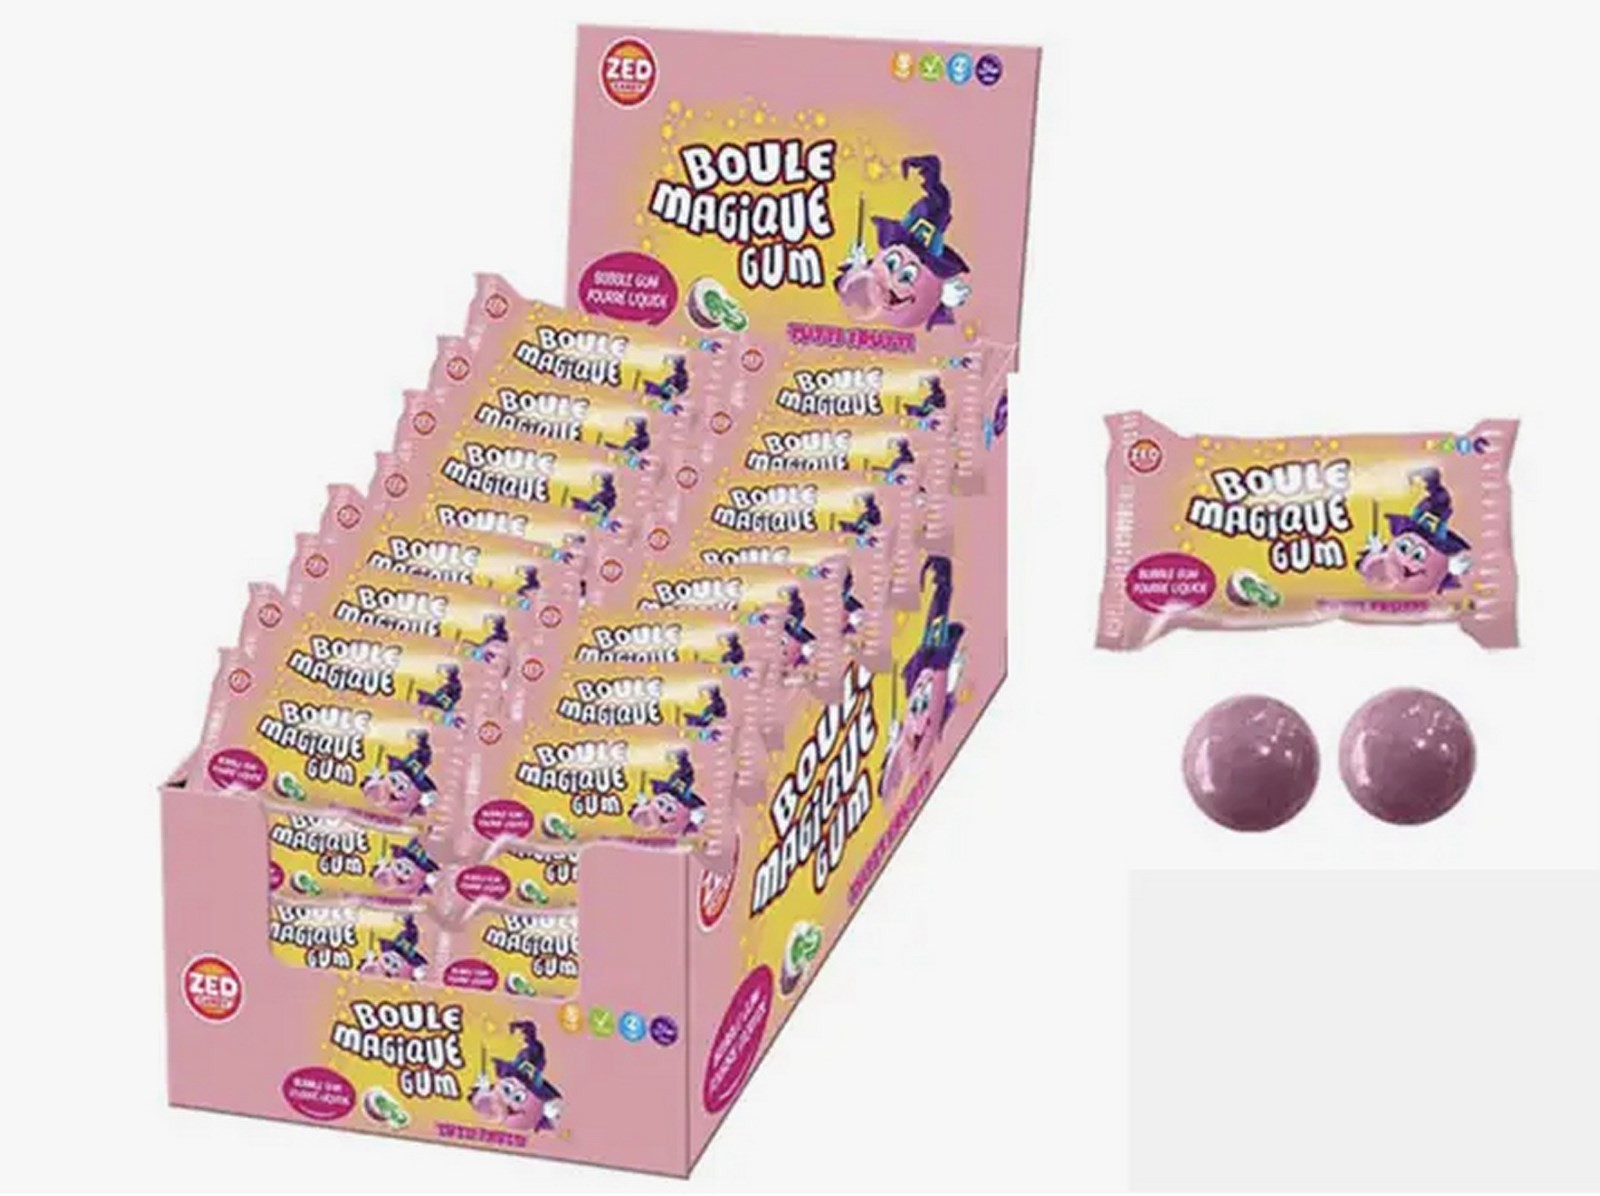 Chewing-gum des années 80 : les boules magiques - Kikitch : le blog vintage  des années 70-80